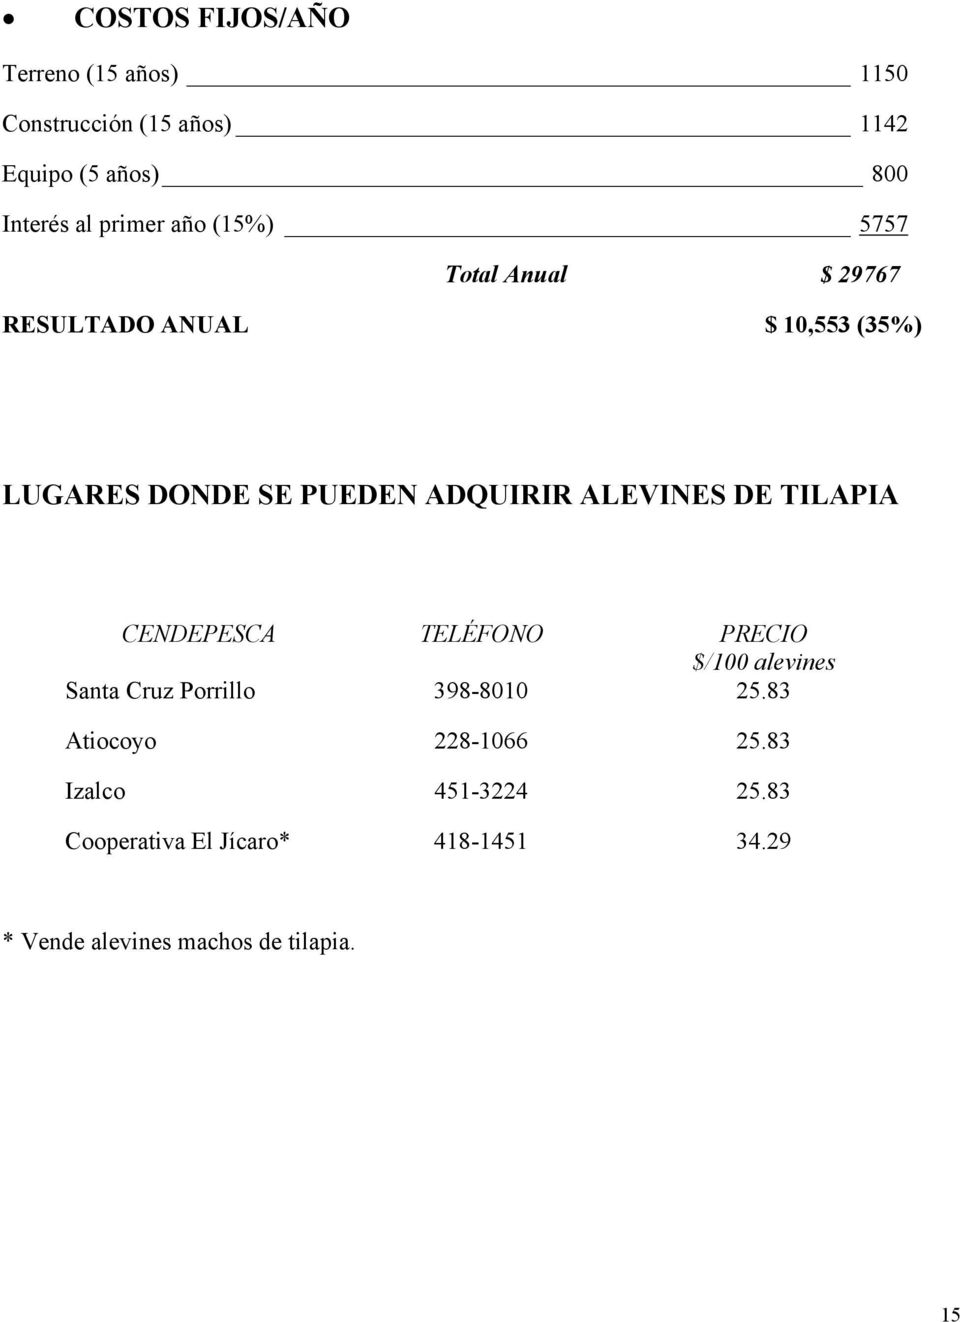 ALEVINES DE TILAPIA CENDEPESCA TELÉFONO PRECIO $/100 alevines Santa Cruz Porrillo 398-8010 25.